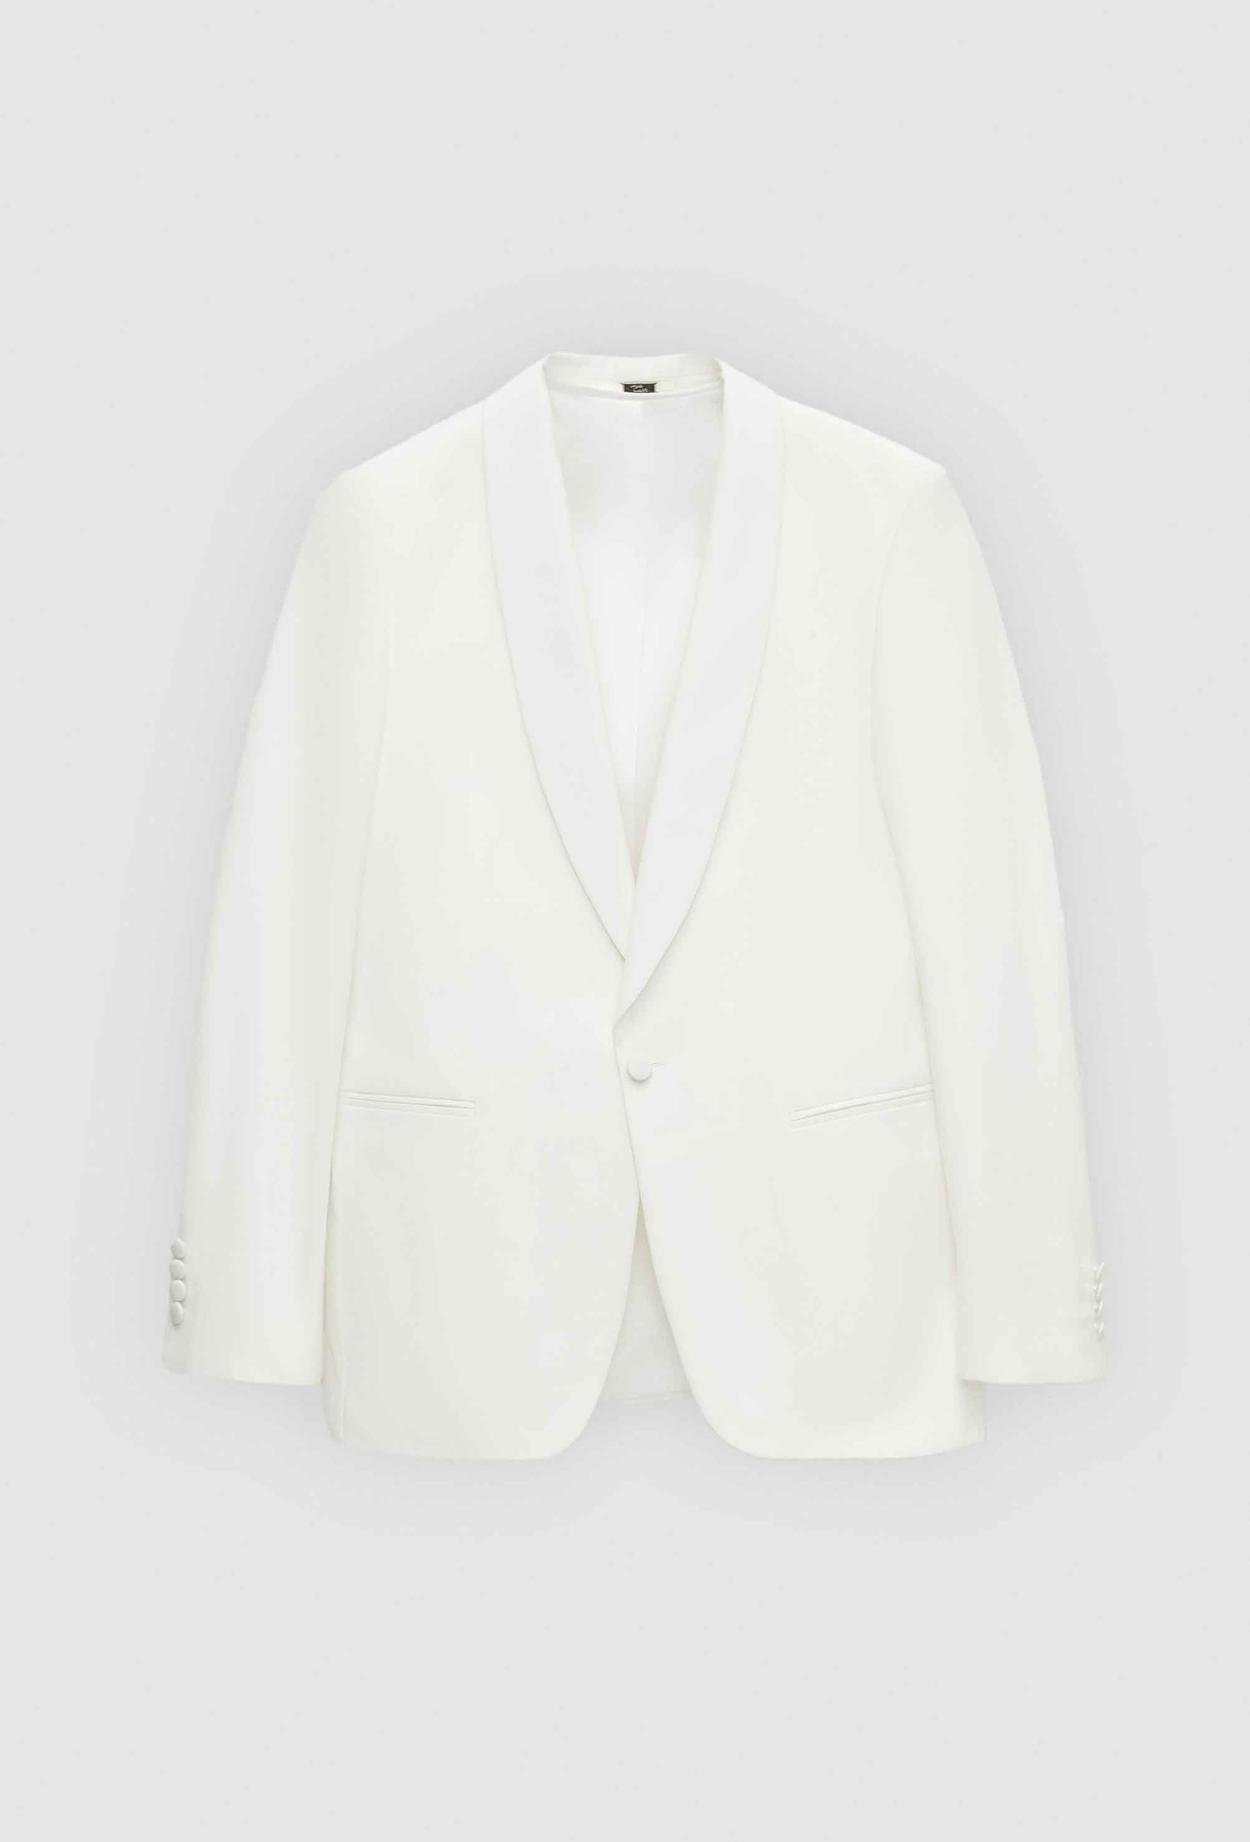 Twn Slim Fit Beyaz Düz Damatlık & Smokin Takim Elbise